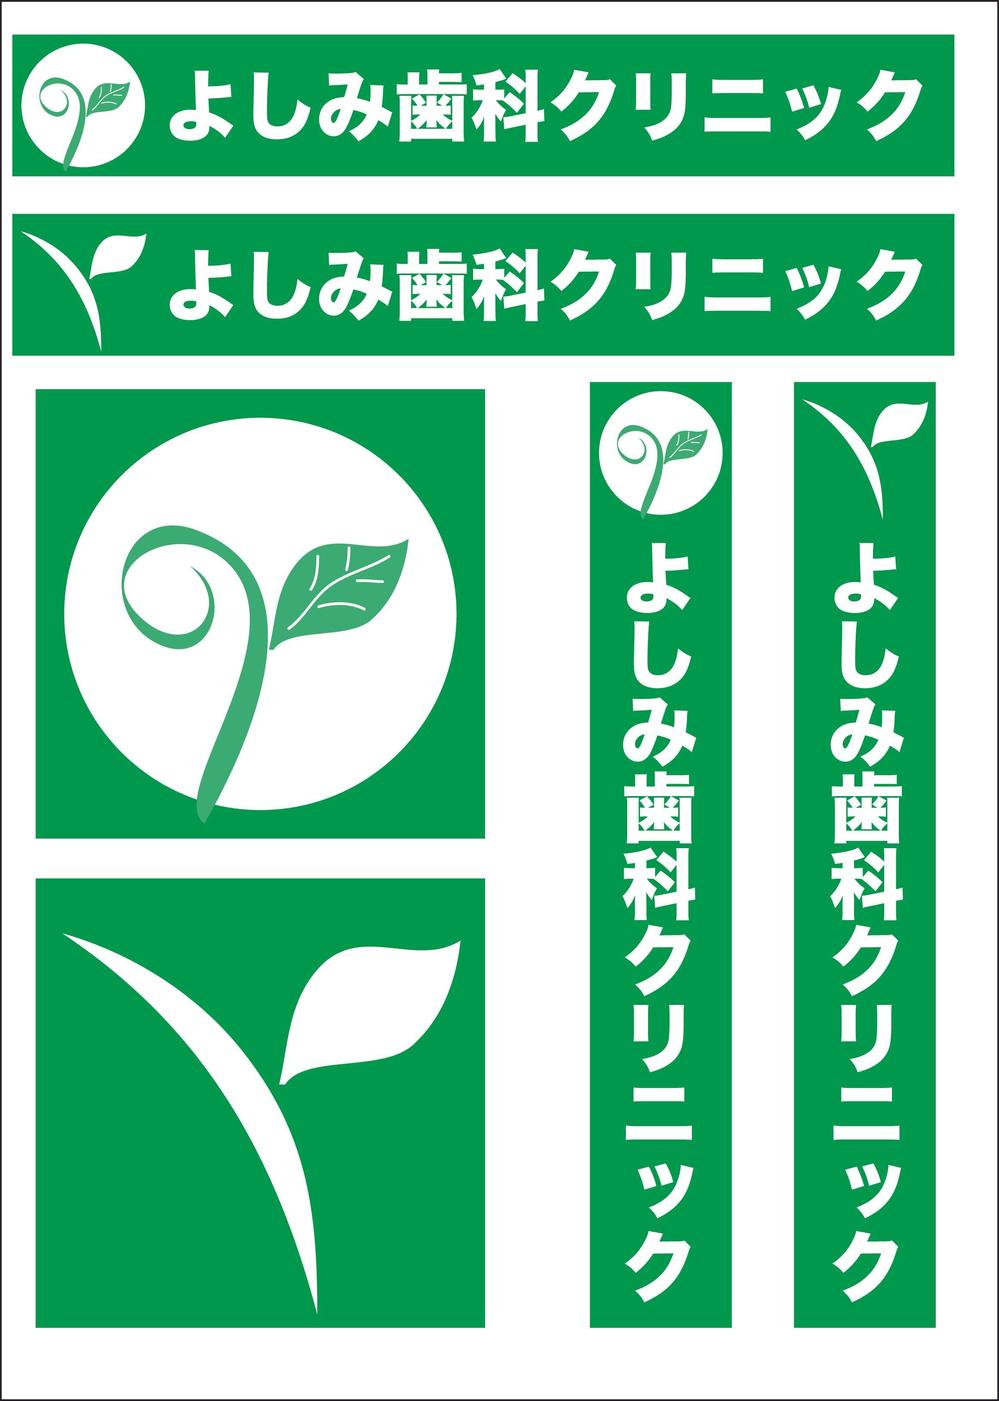 yosimi-logo.jpg